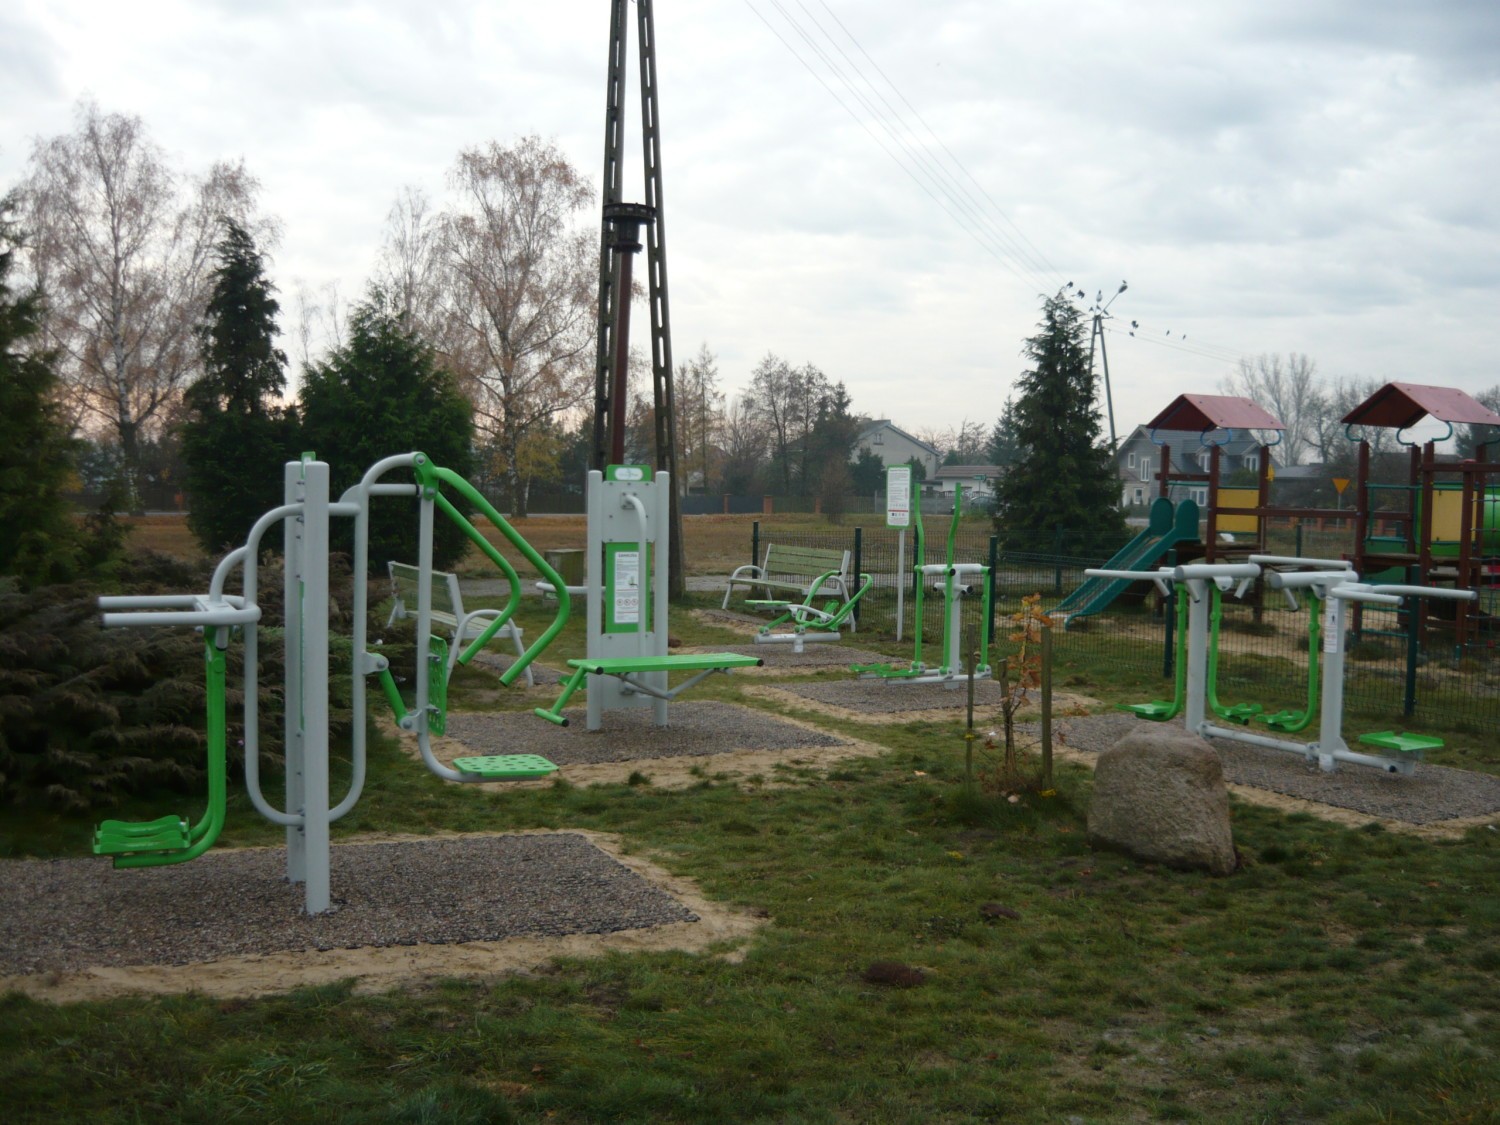 W ostatnich dniach na terenie gminy Gizałki oddano do użytku 5 nowych siłowni zewnętrznych i 2 place zabaw